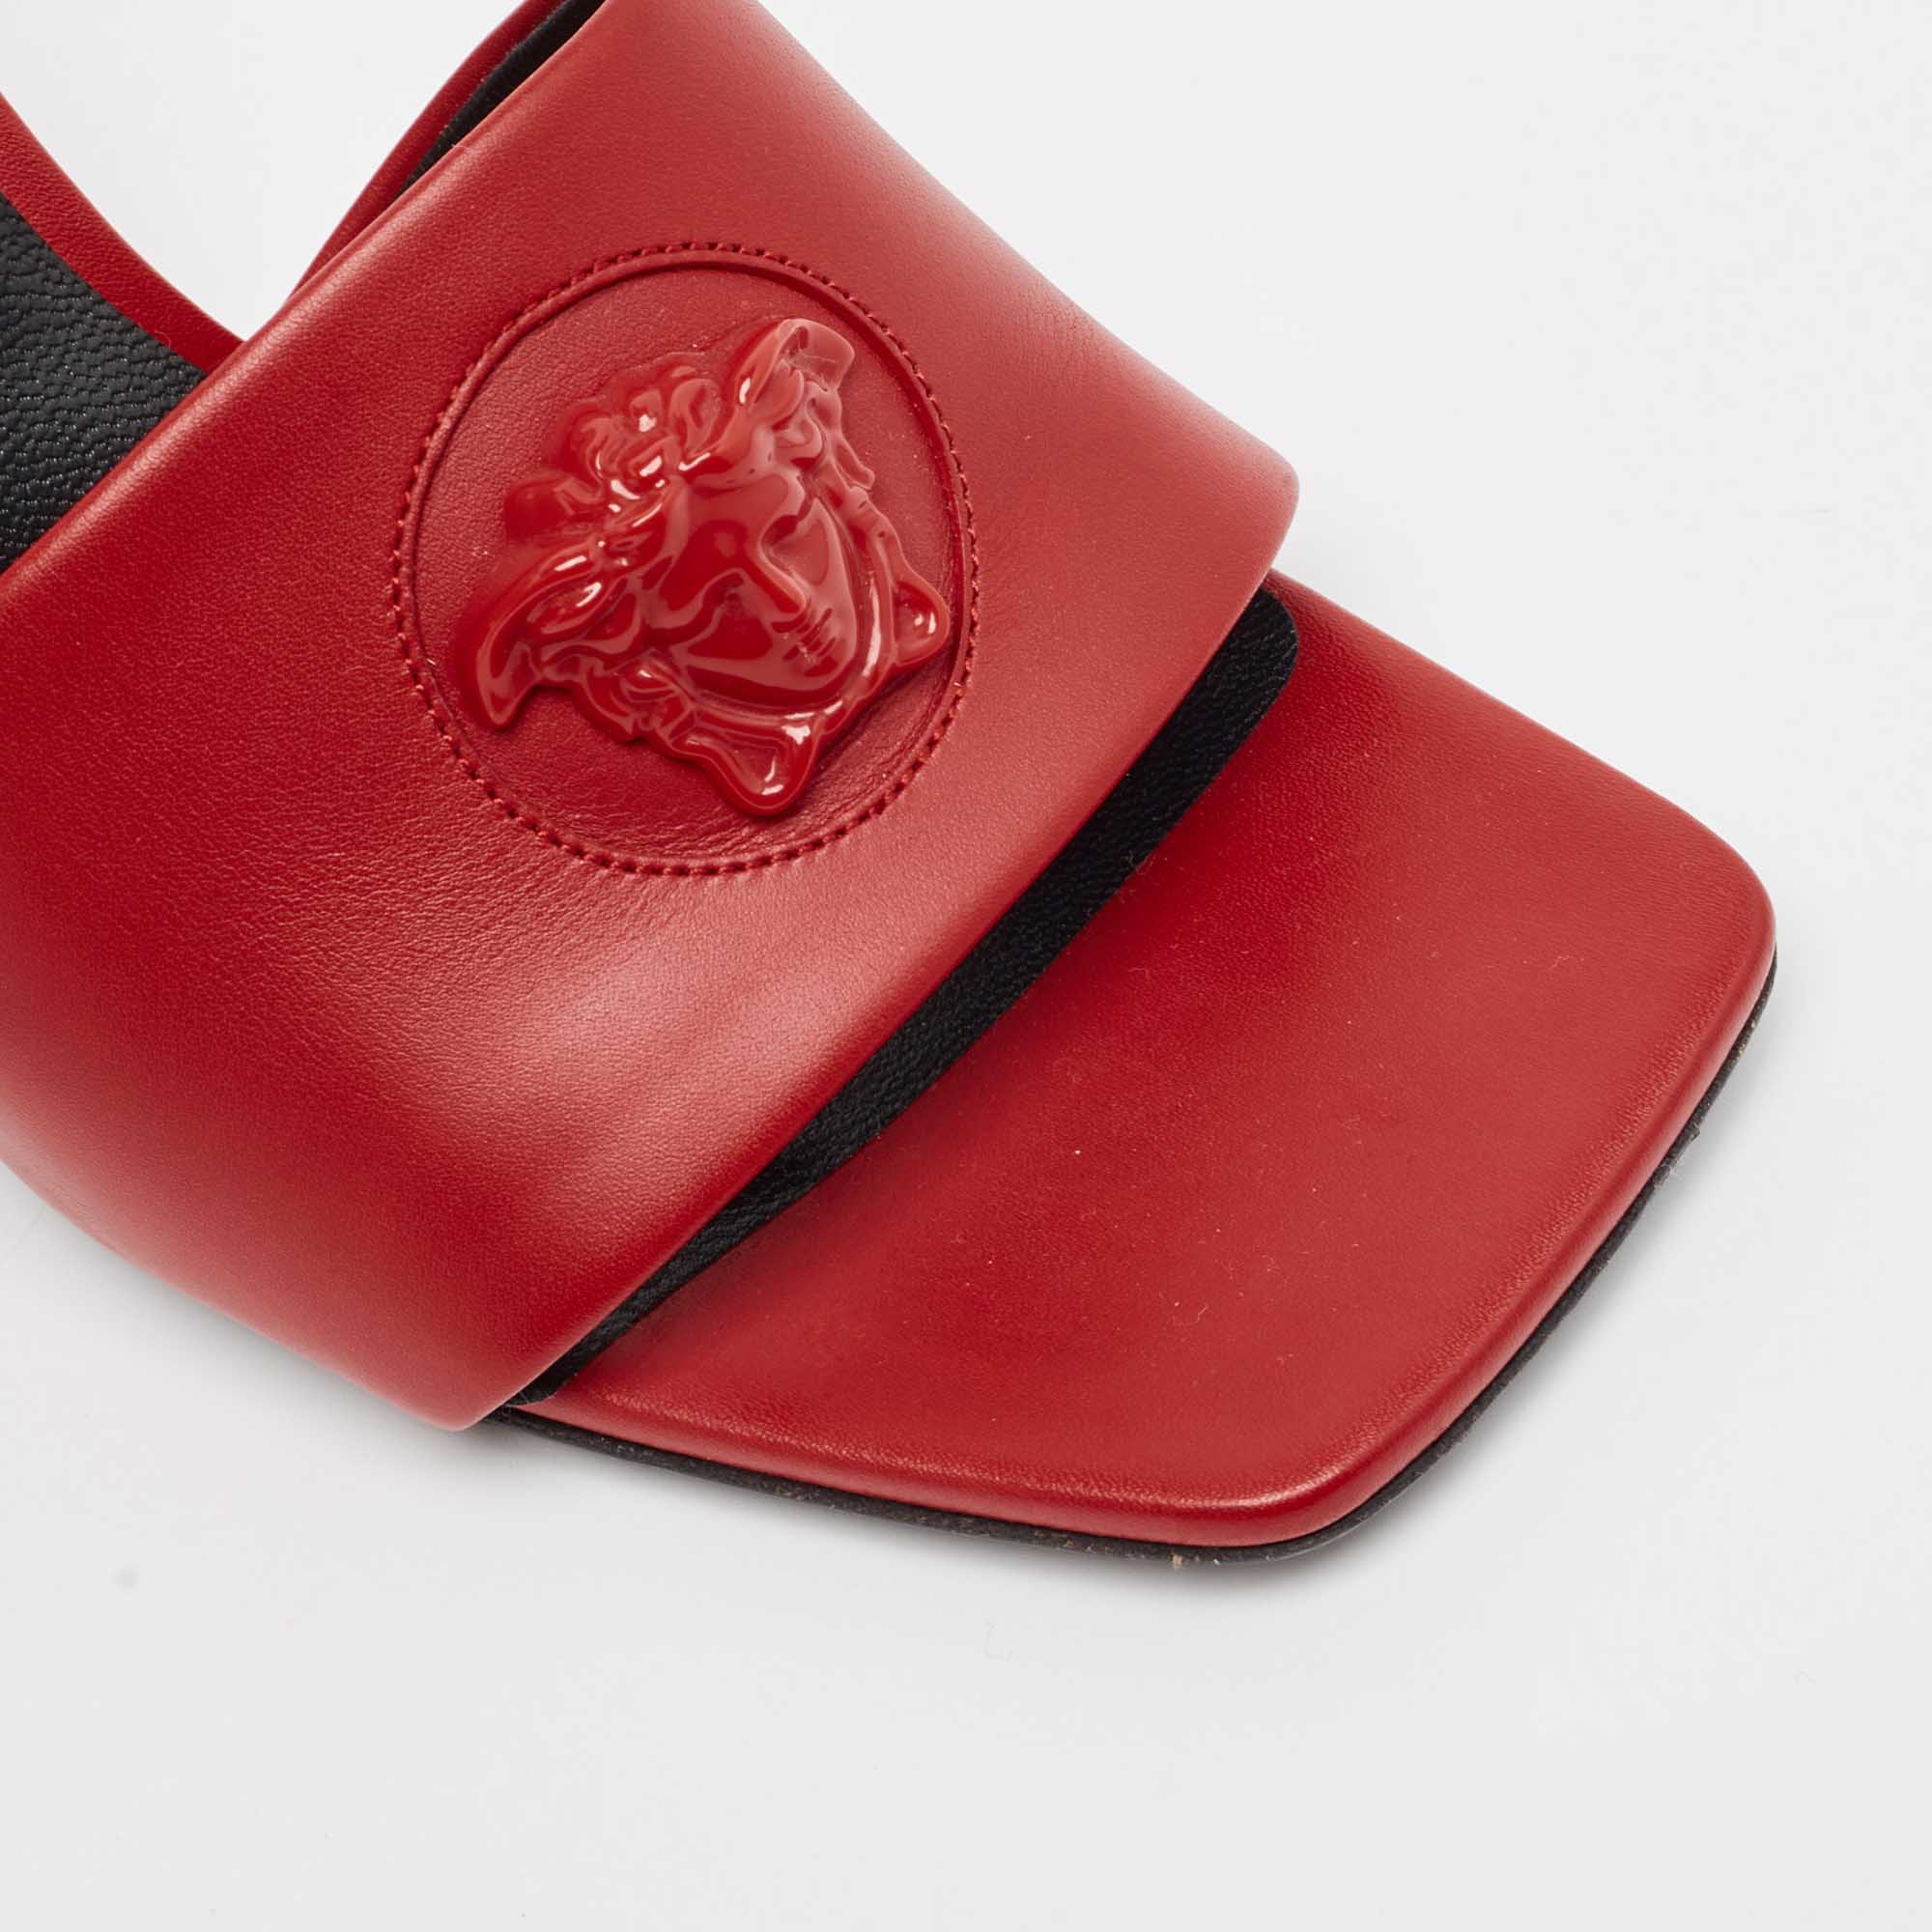 Versace Red Leather Medusa Slide Sandals Size 37